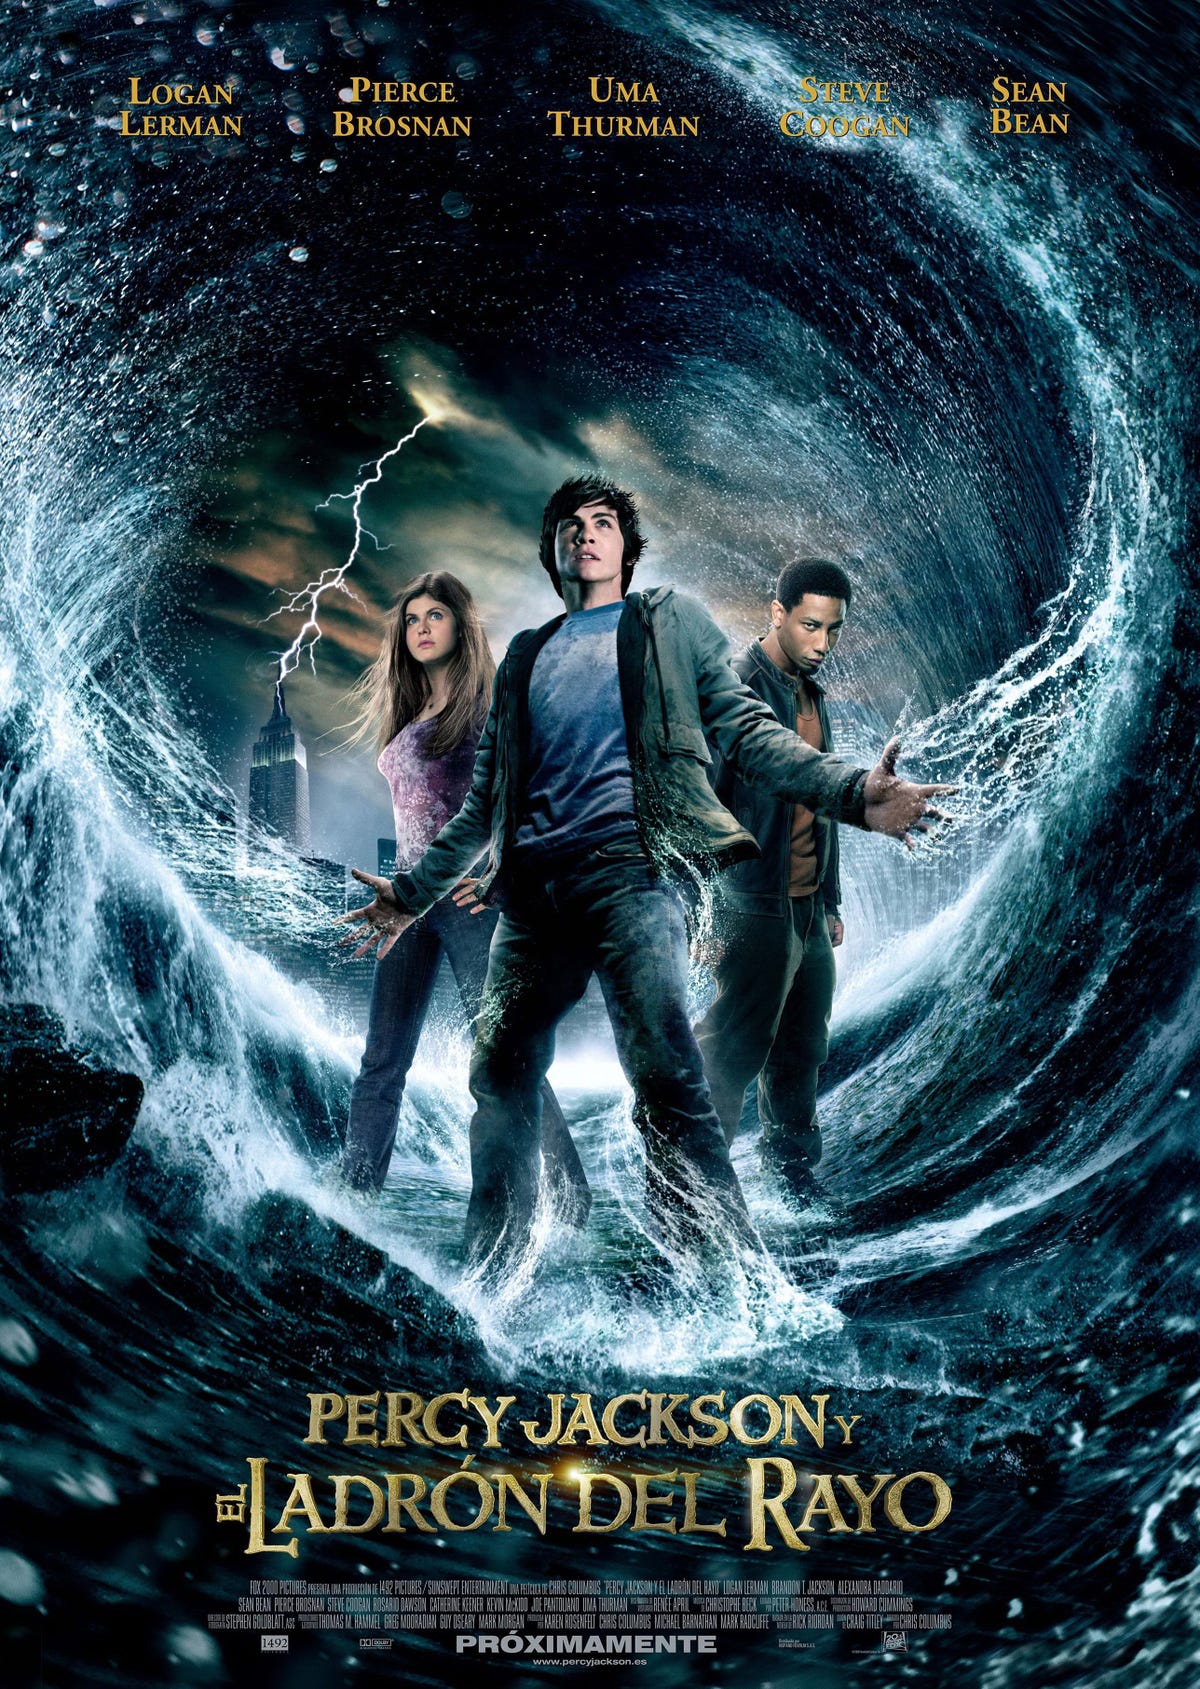 Duelos de Cine: Percy Jackson y el mar de los monstruos - Percy Jackson y el  ladrón del rayo